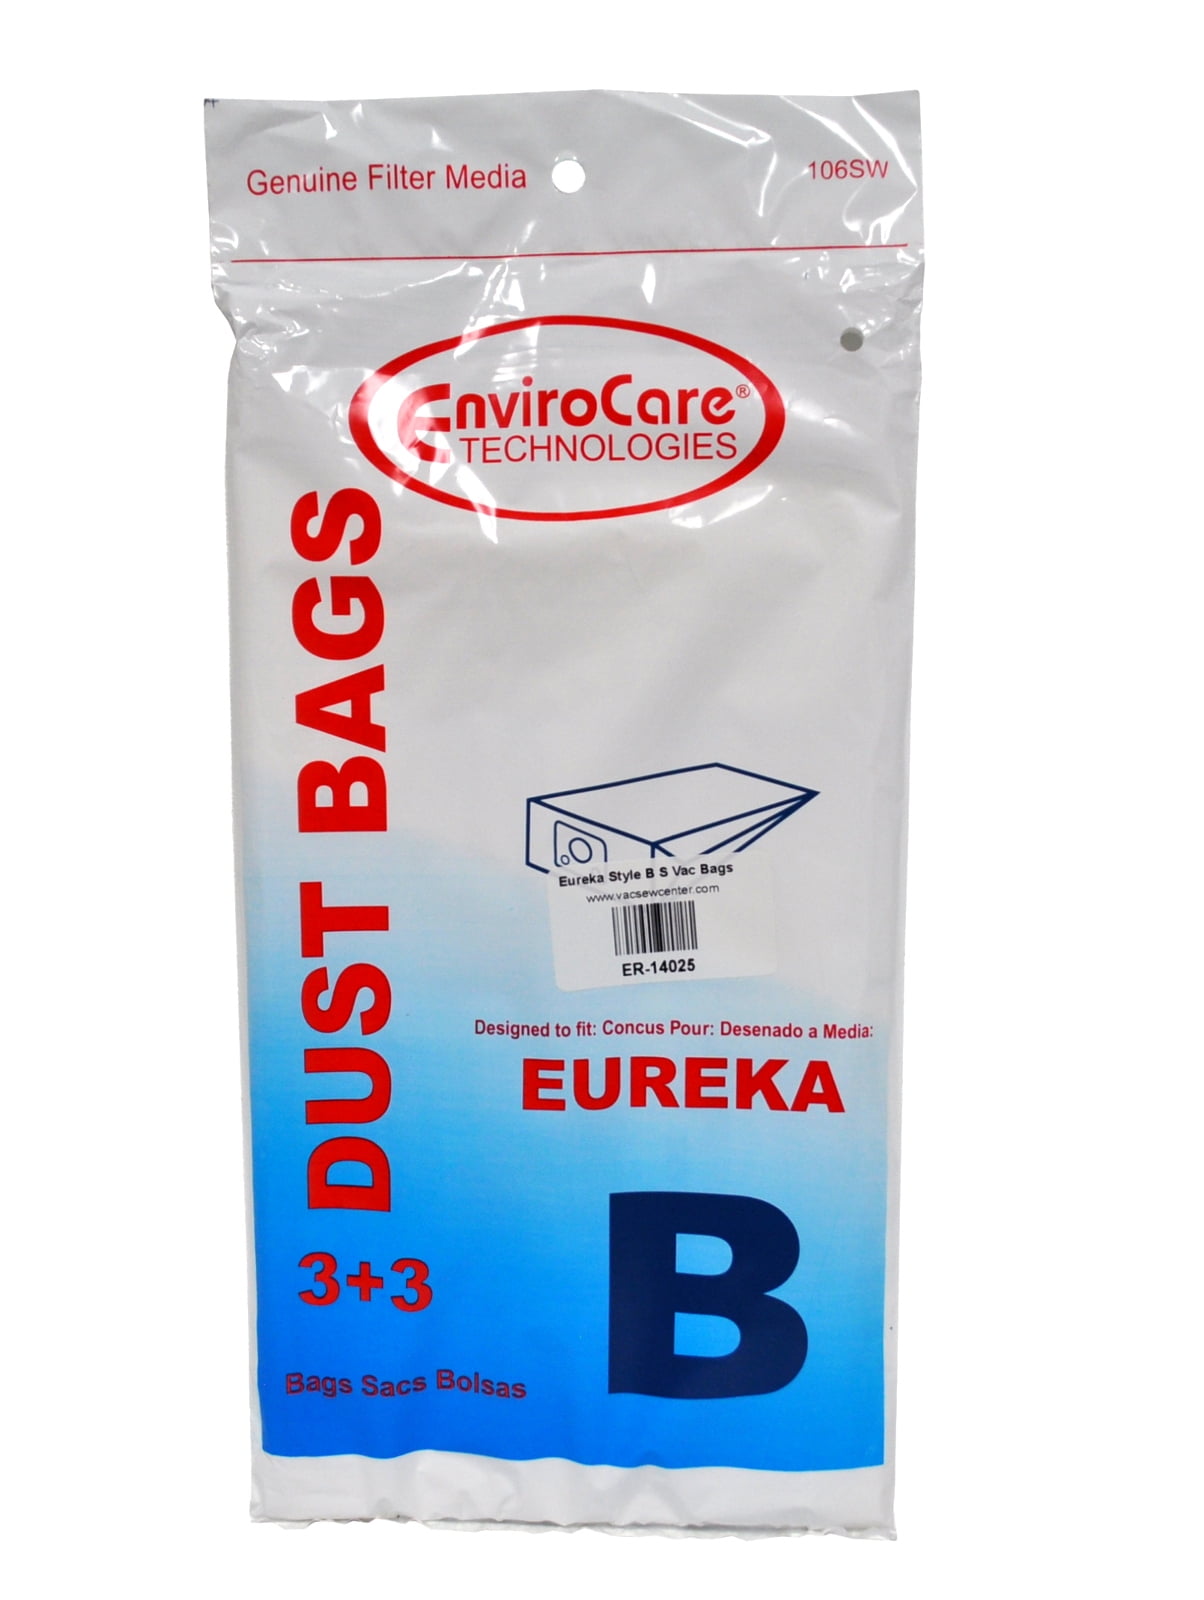 u-202 Eureka Style Y 3 Bags 1 Filter Pair 